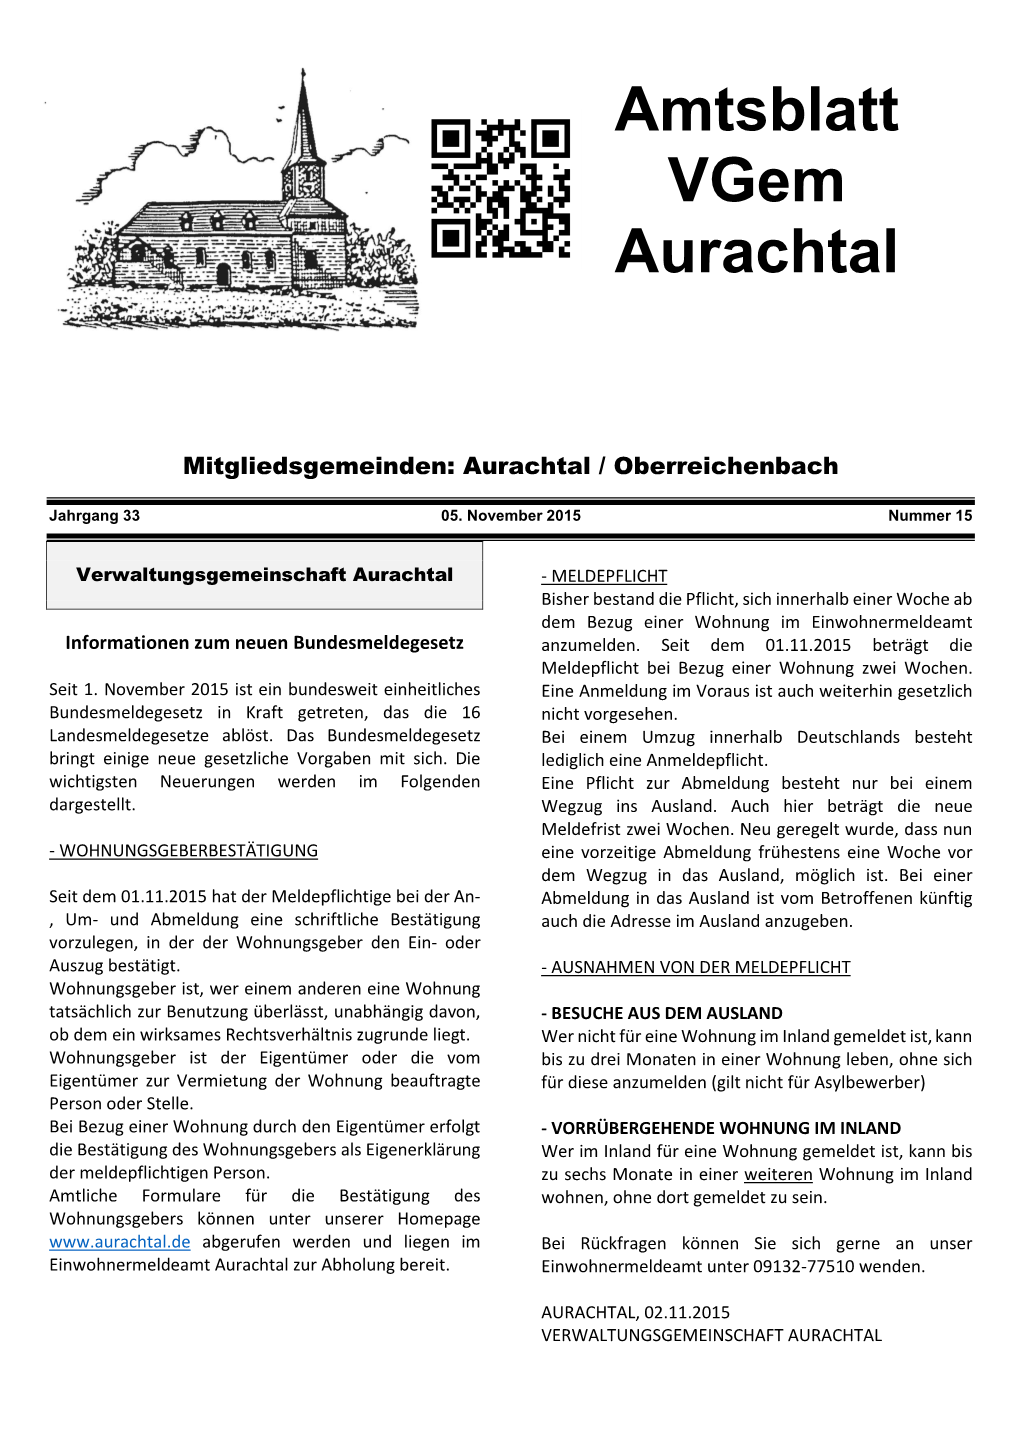 Amtsblatt Fürs Internet 15-15 V. 05.11.2015